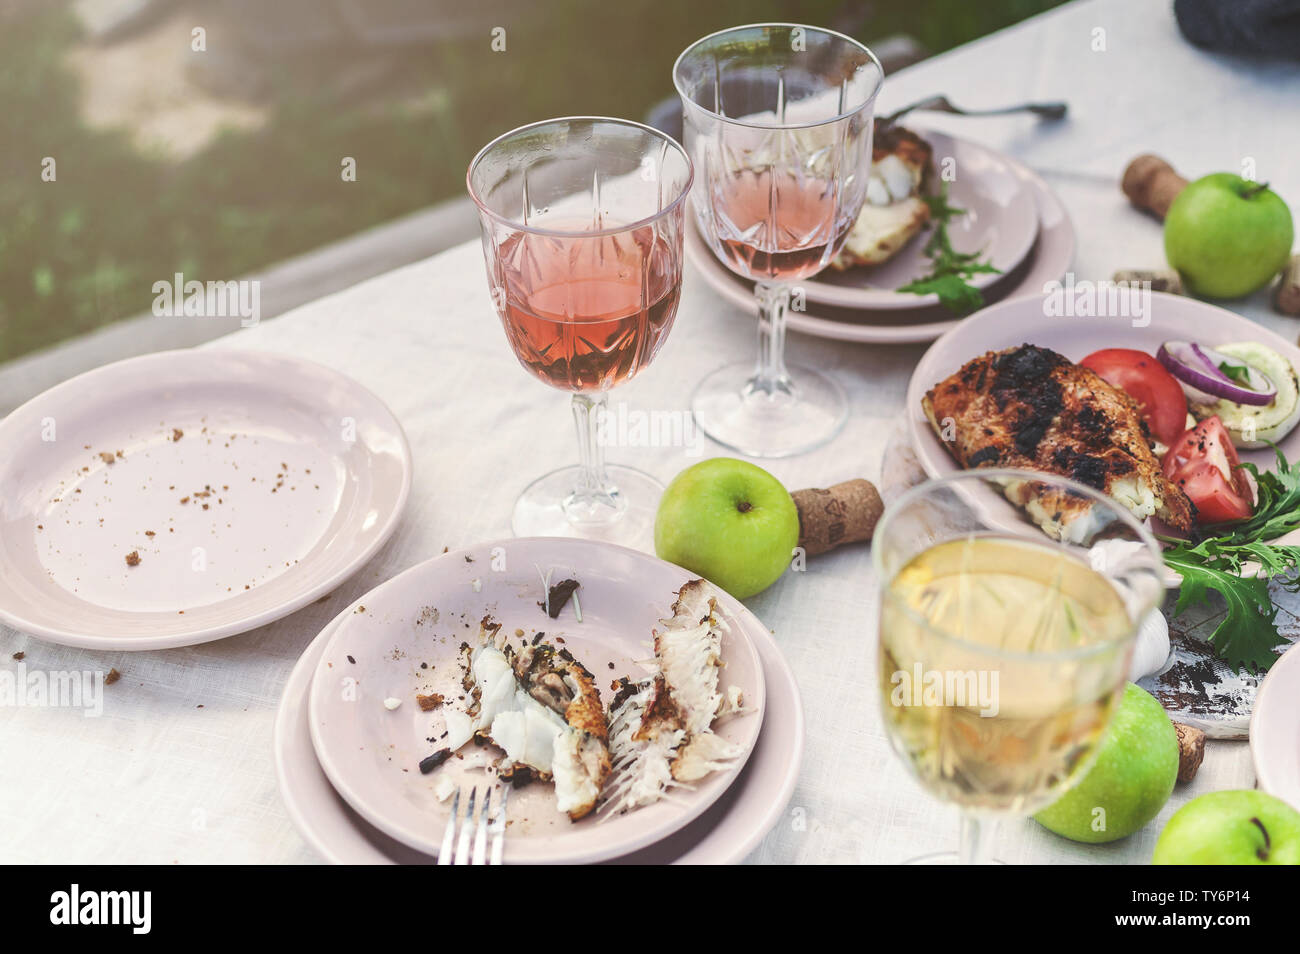 Verres de vin blanc et rose, du poisson grillé, des plaques, légumes, salades et fruits sur la table. Fête de l'été dans l'arrière-cour. Plan horizontal Banque D'Images